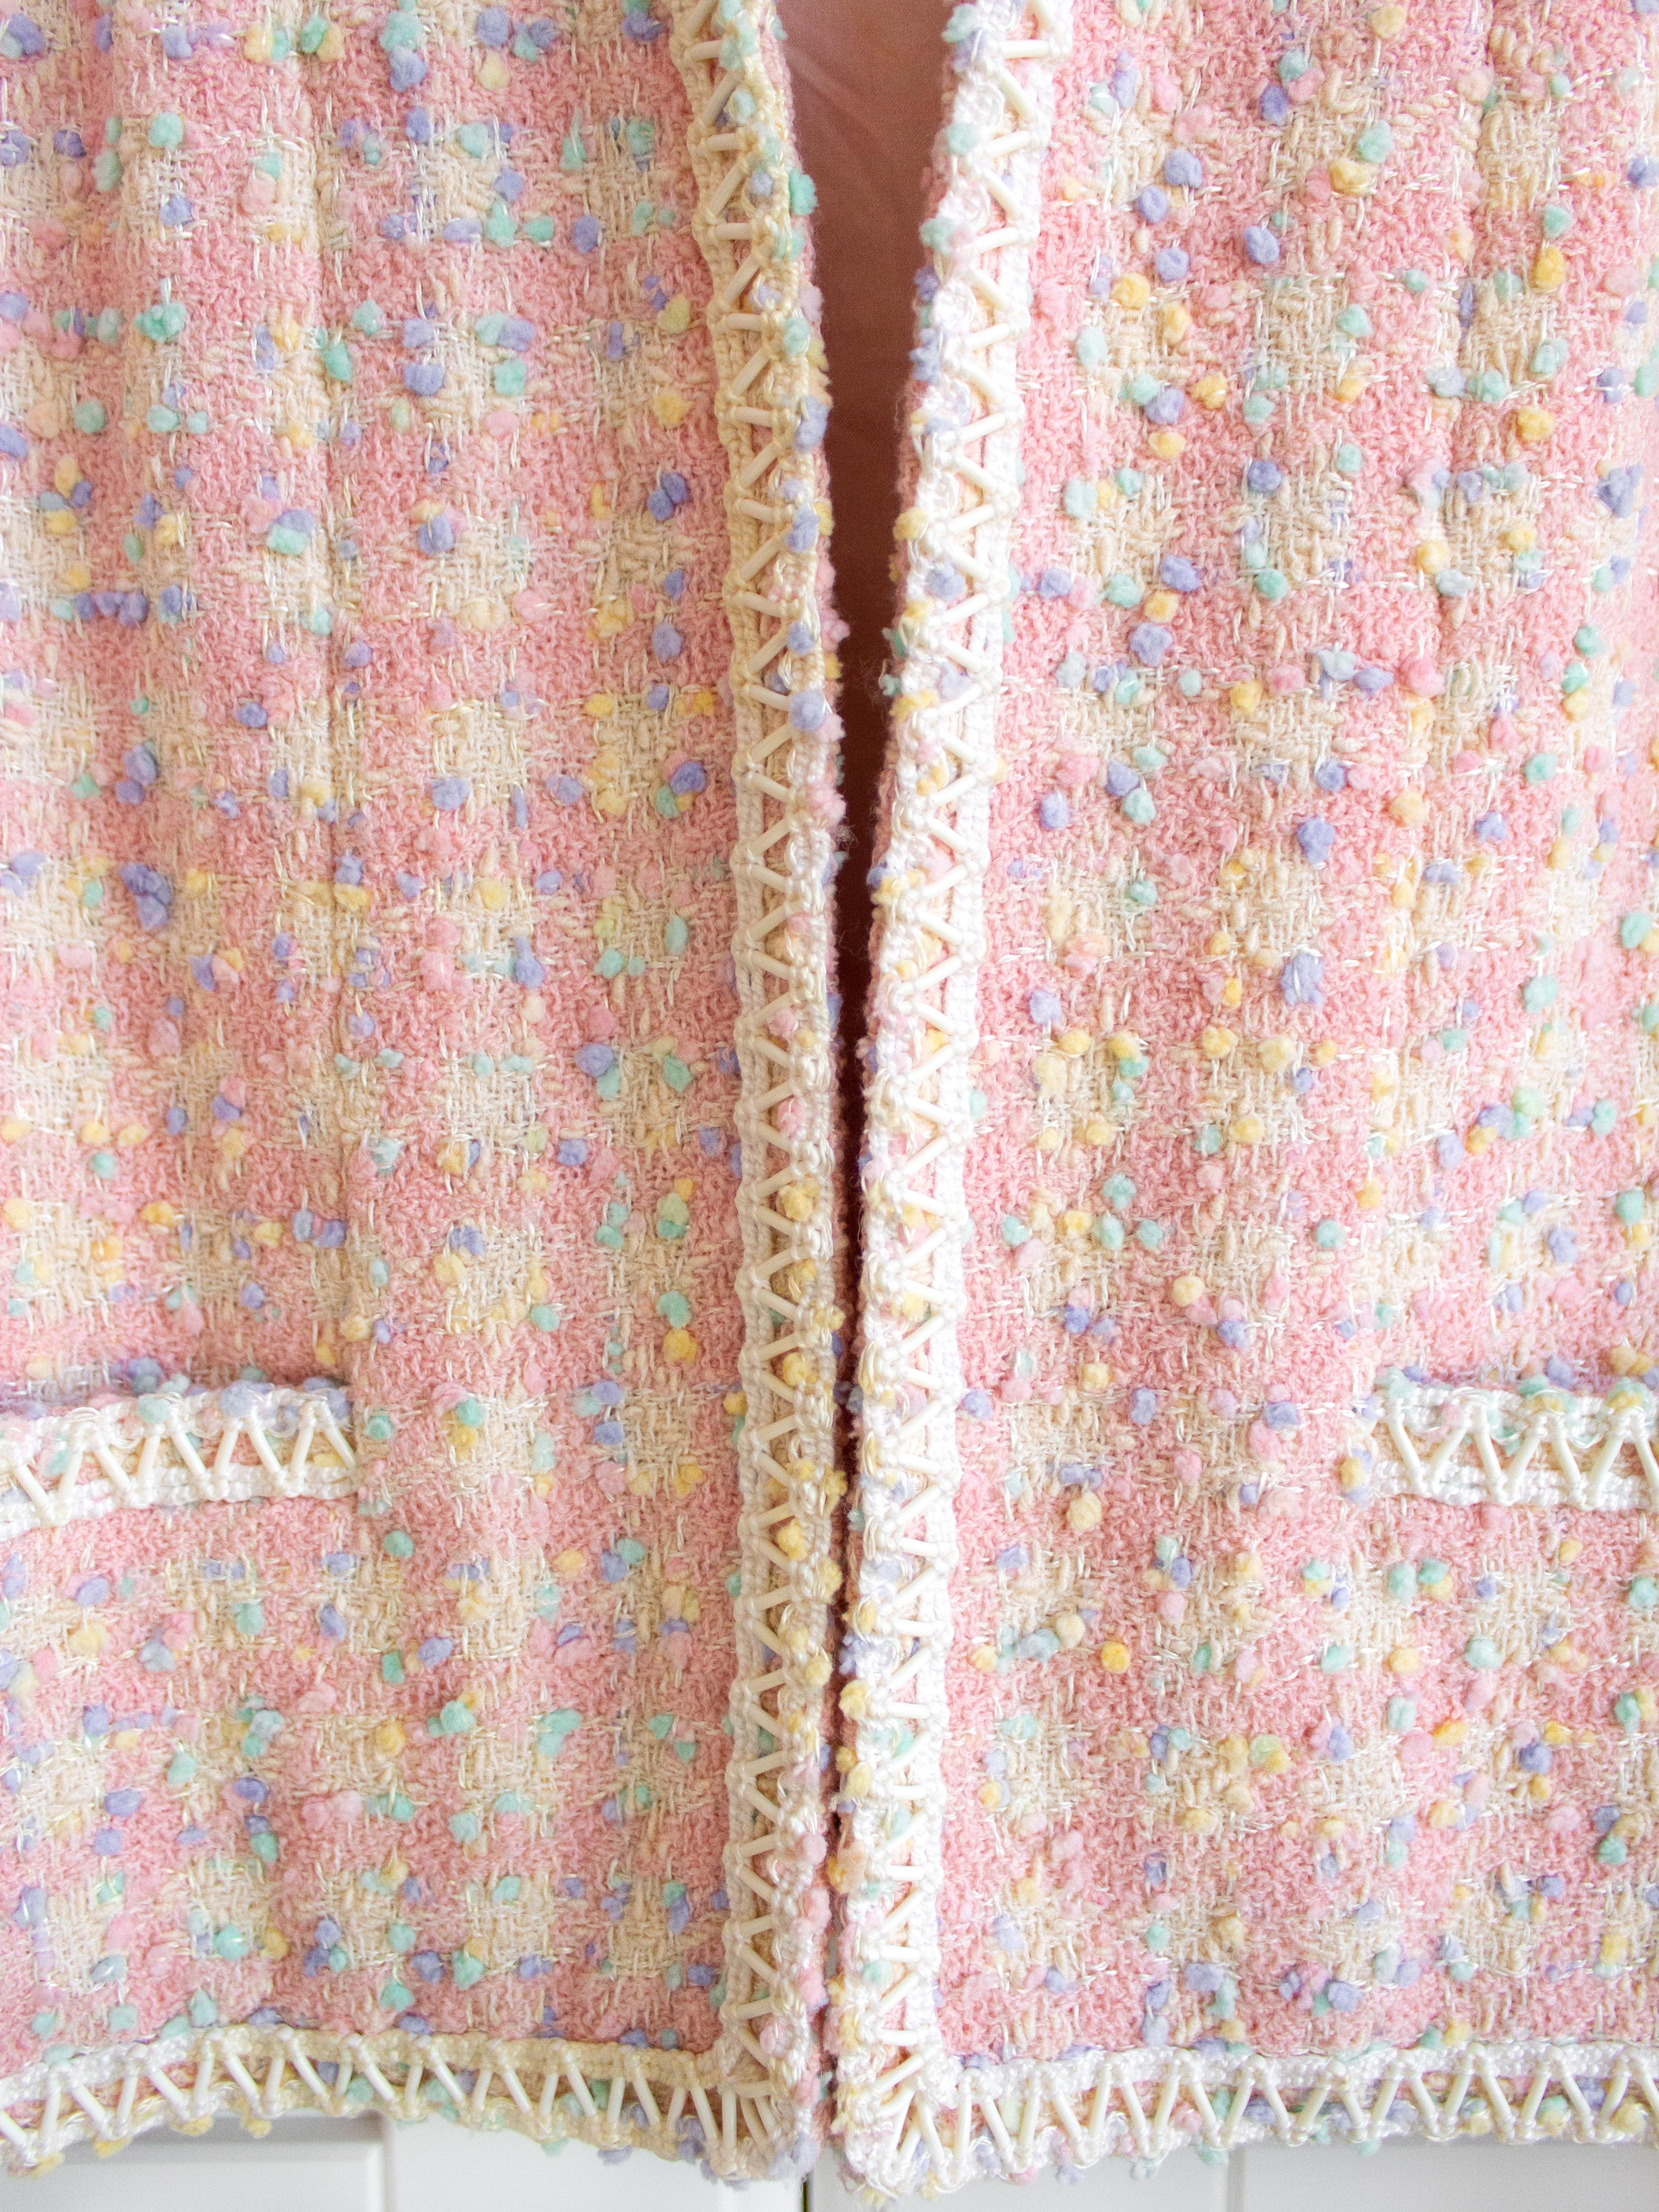 Women's Iconic Chanel Vintage S/S 1994 Runway Pink Popcorn Tweed 94P Jacket Skirt Suit